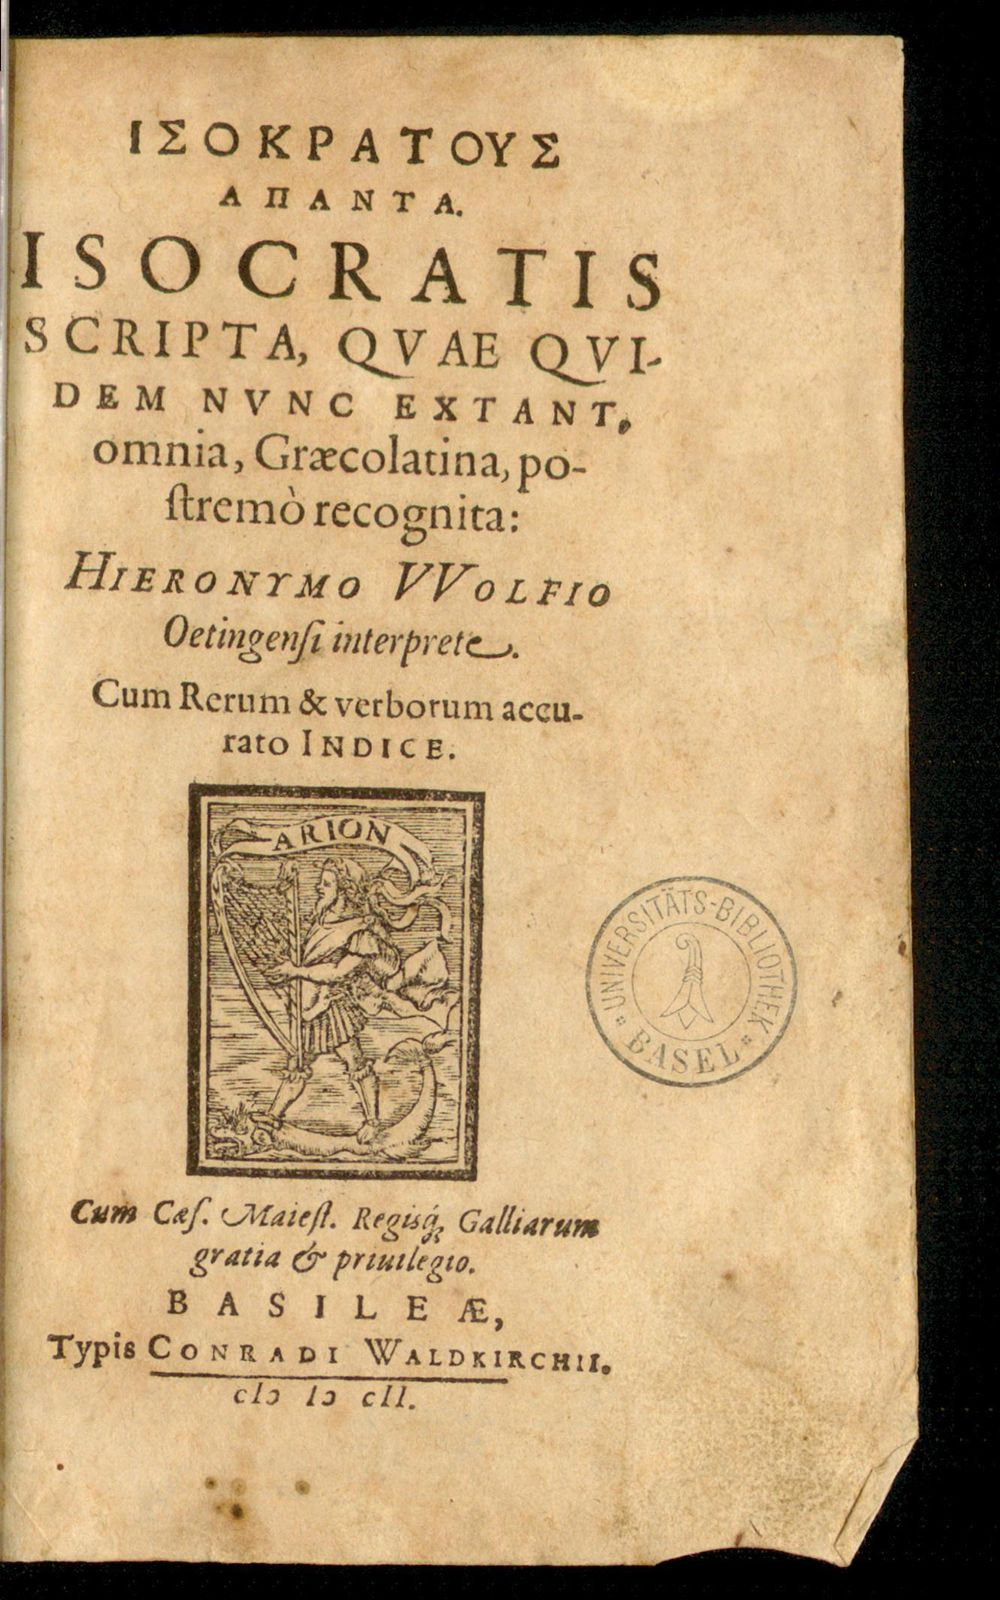 Isokratous hapanta. = Isocratis scripta : quae quidem nunc extant, omnia, Graecolatina, postremo recognita